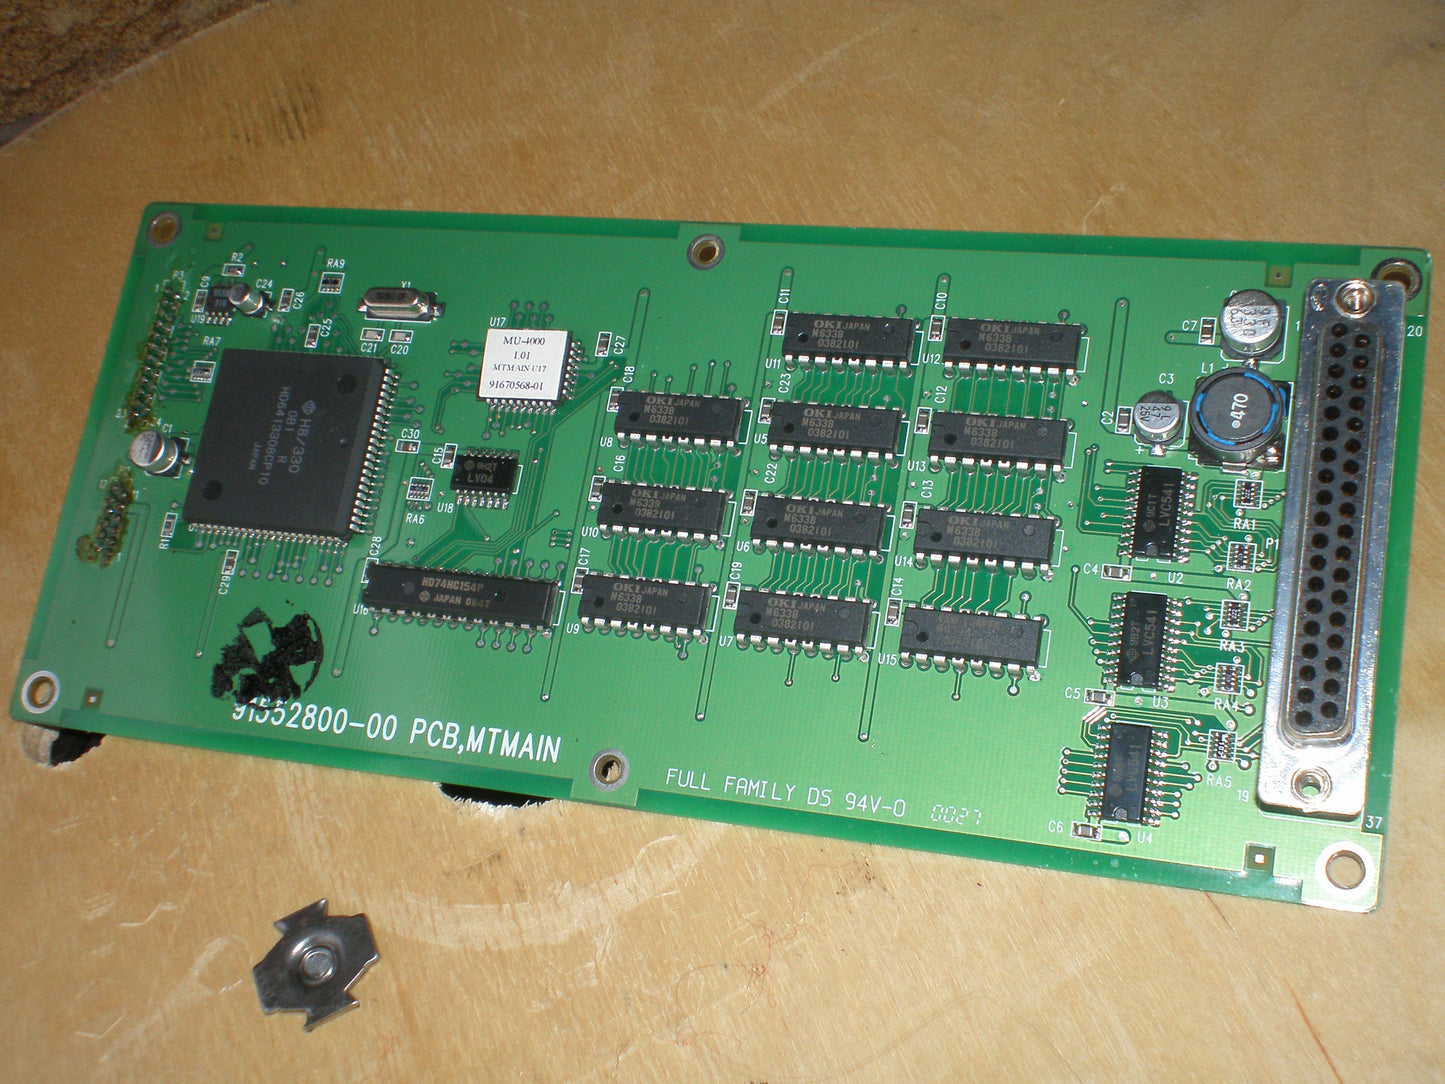 MU4000 LED VU Meter PCB MTMAIN 91552800-00